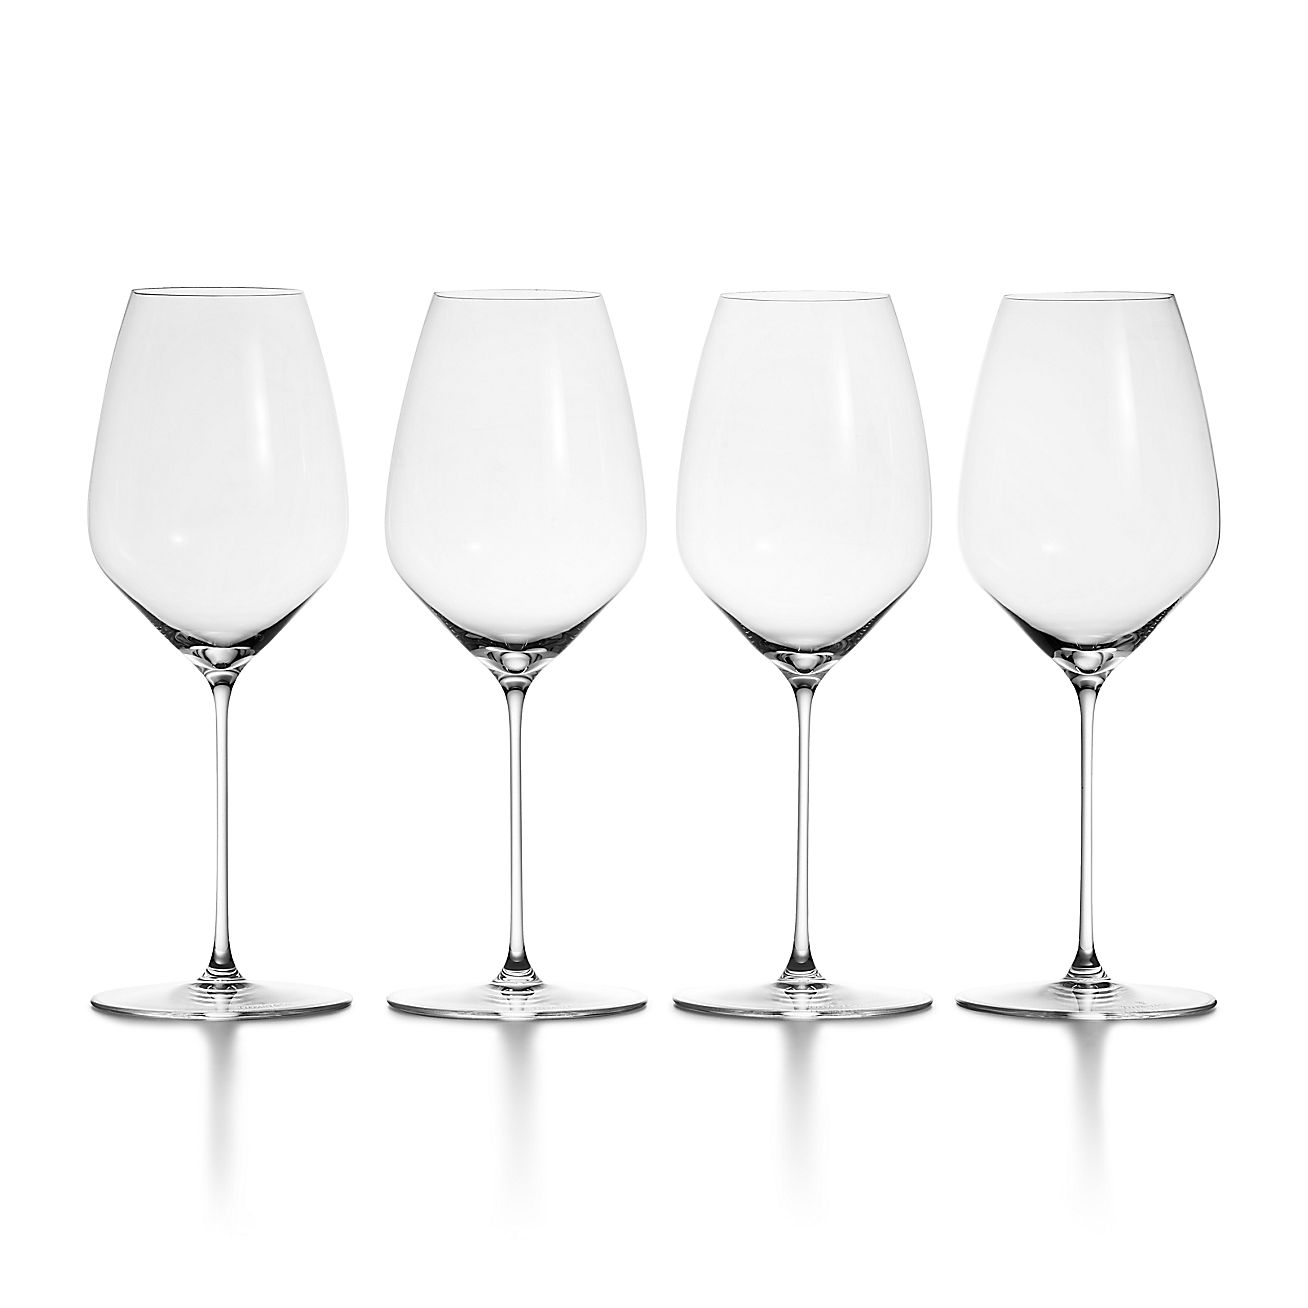 Set of 8 color crystal wine glasses